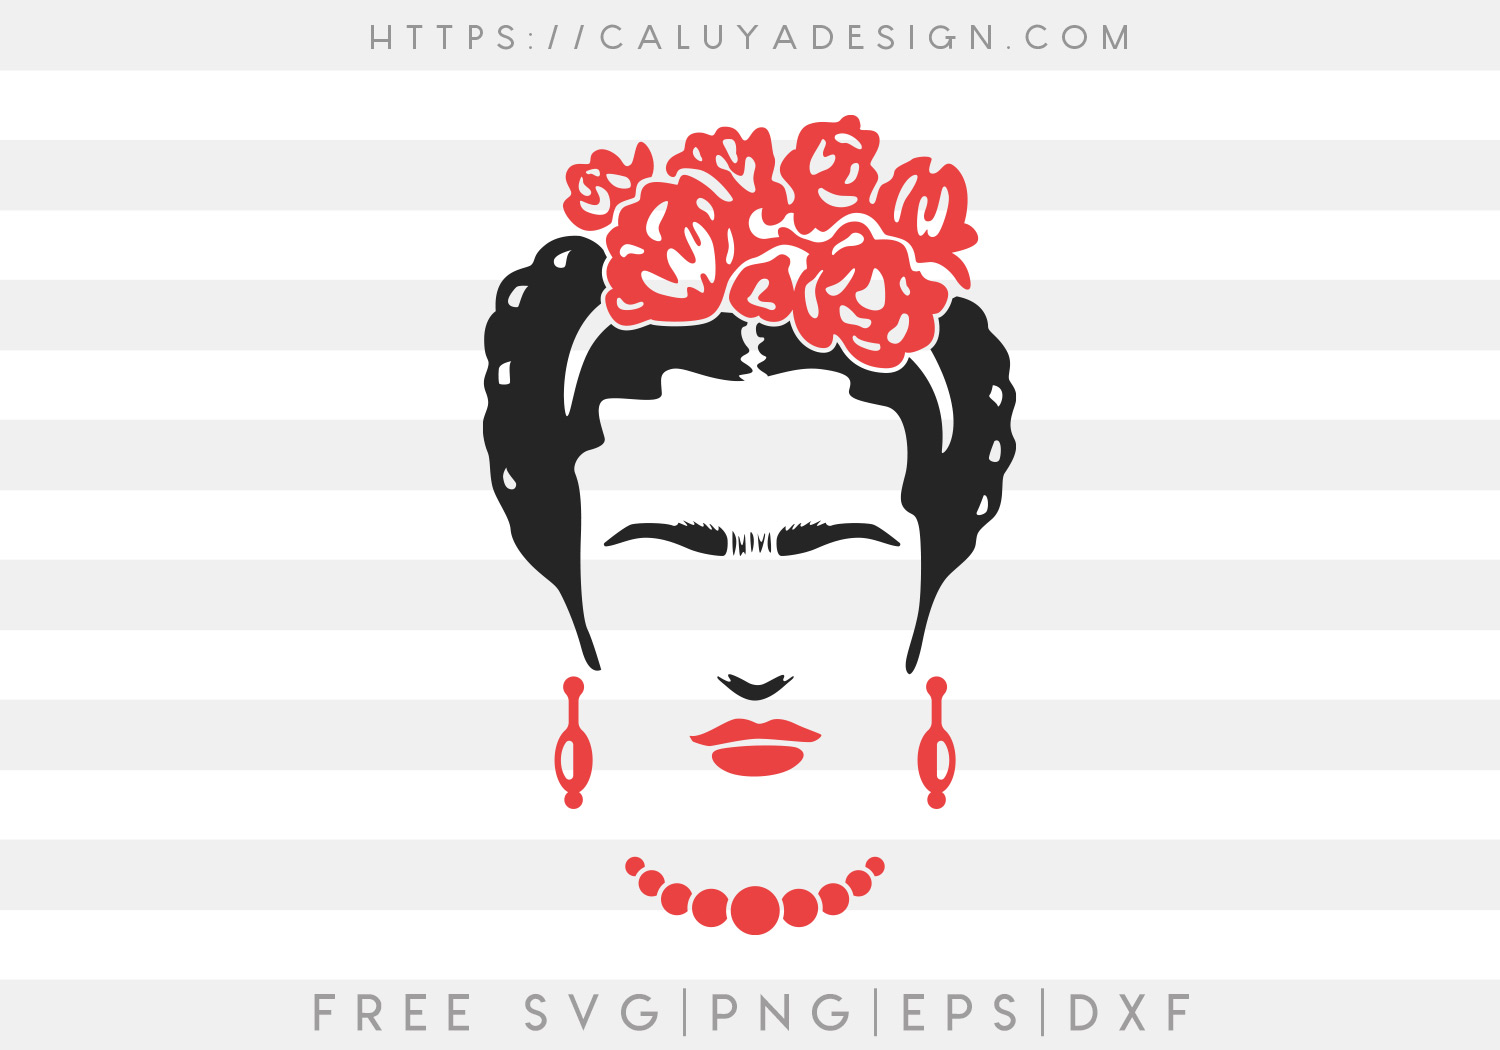 Frida Kahlo SVG, PNG, EPS & DXF